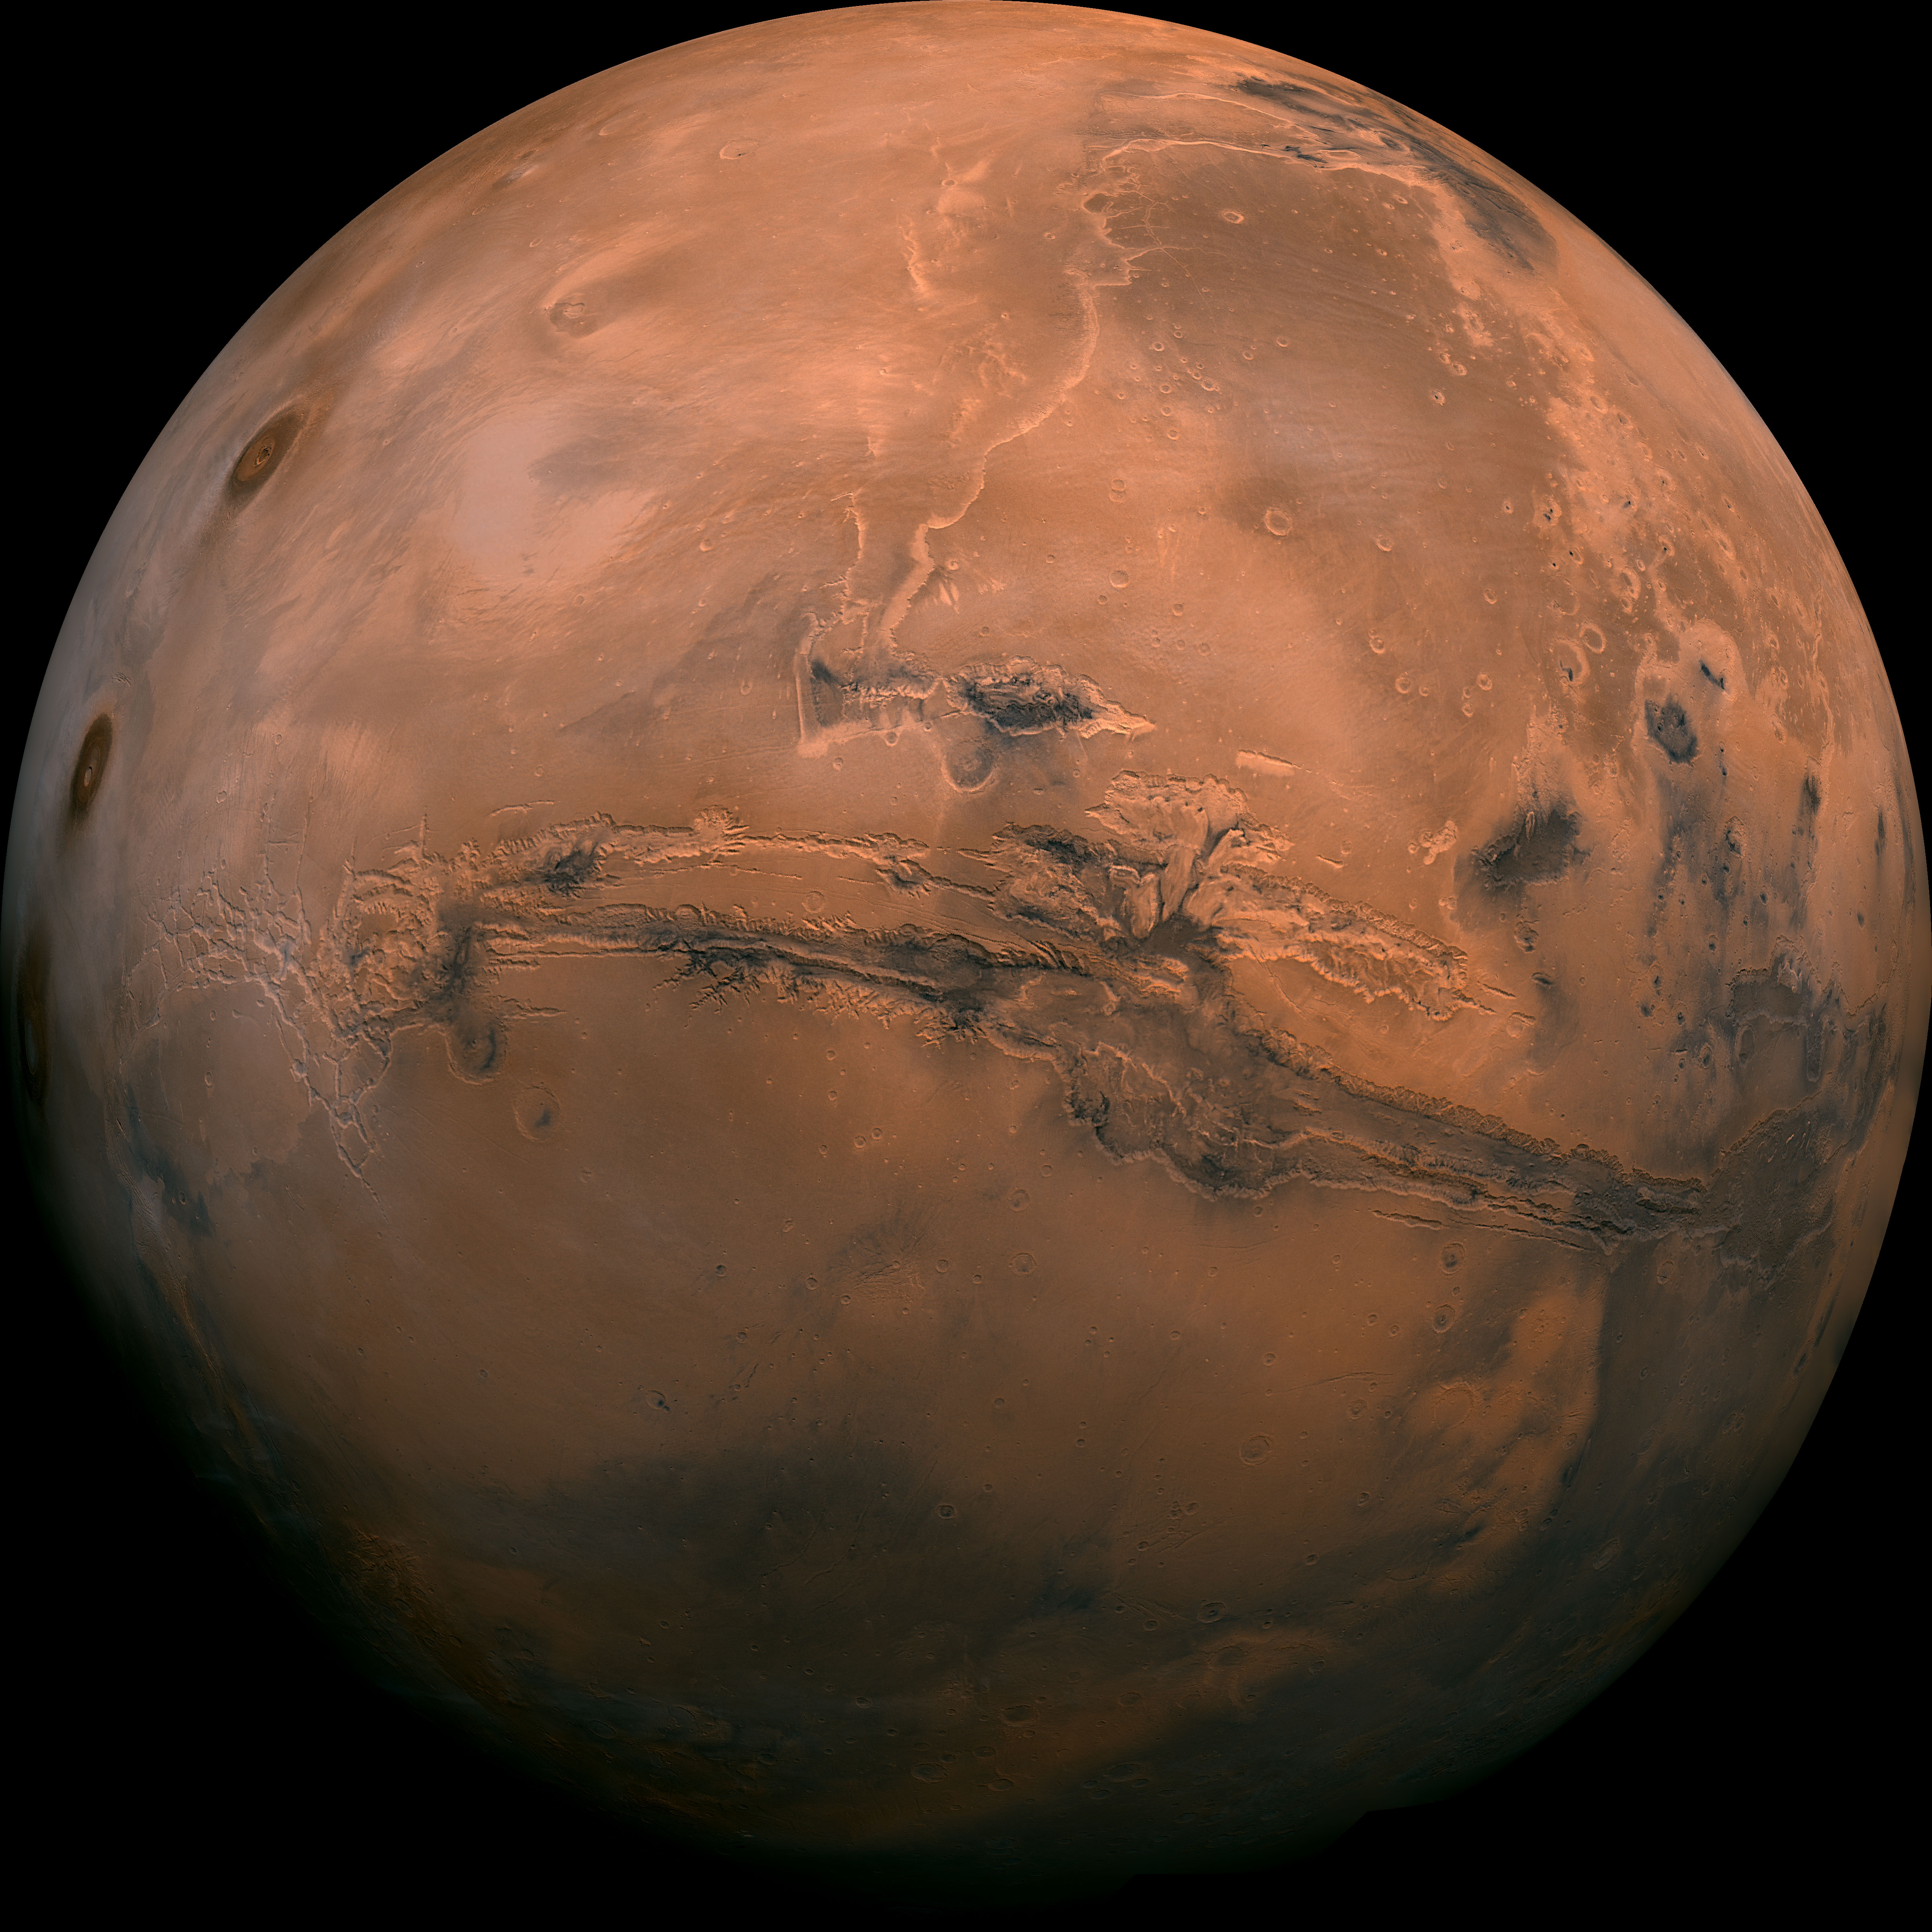 La NASA seleziona studi di servizi commerciali per consentire la scienza robotica su Marte